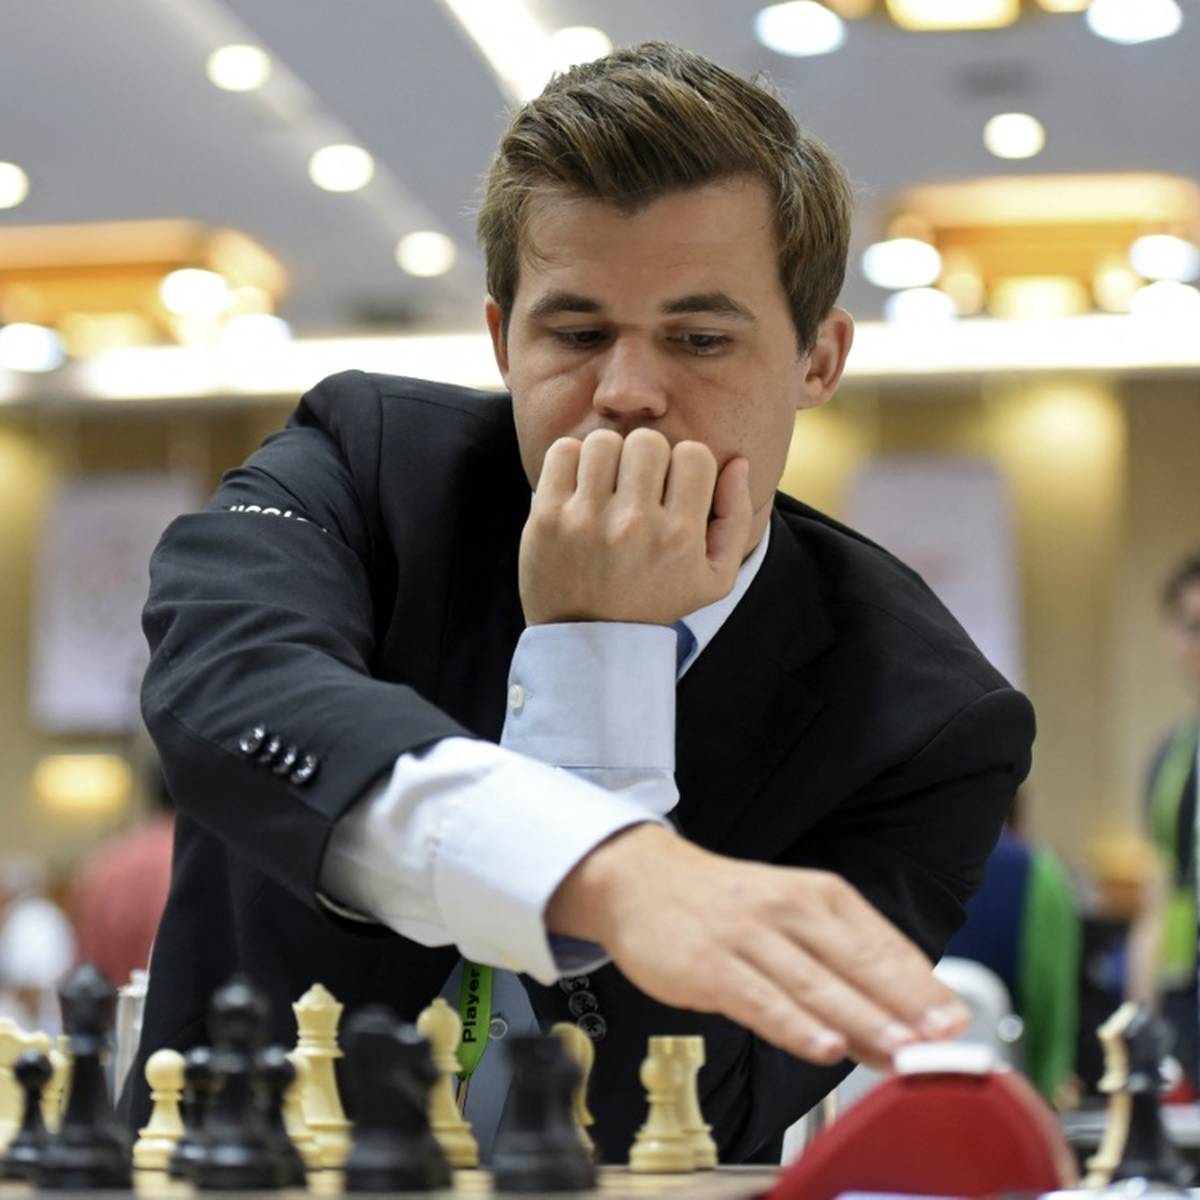 Der Streit zwischen Magnus Carlsen und US-Teenager Hans Niemann beschäftigt die Sportwelt seit Tagen. Nun spricht der Schach-Weltmeister Klartext.